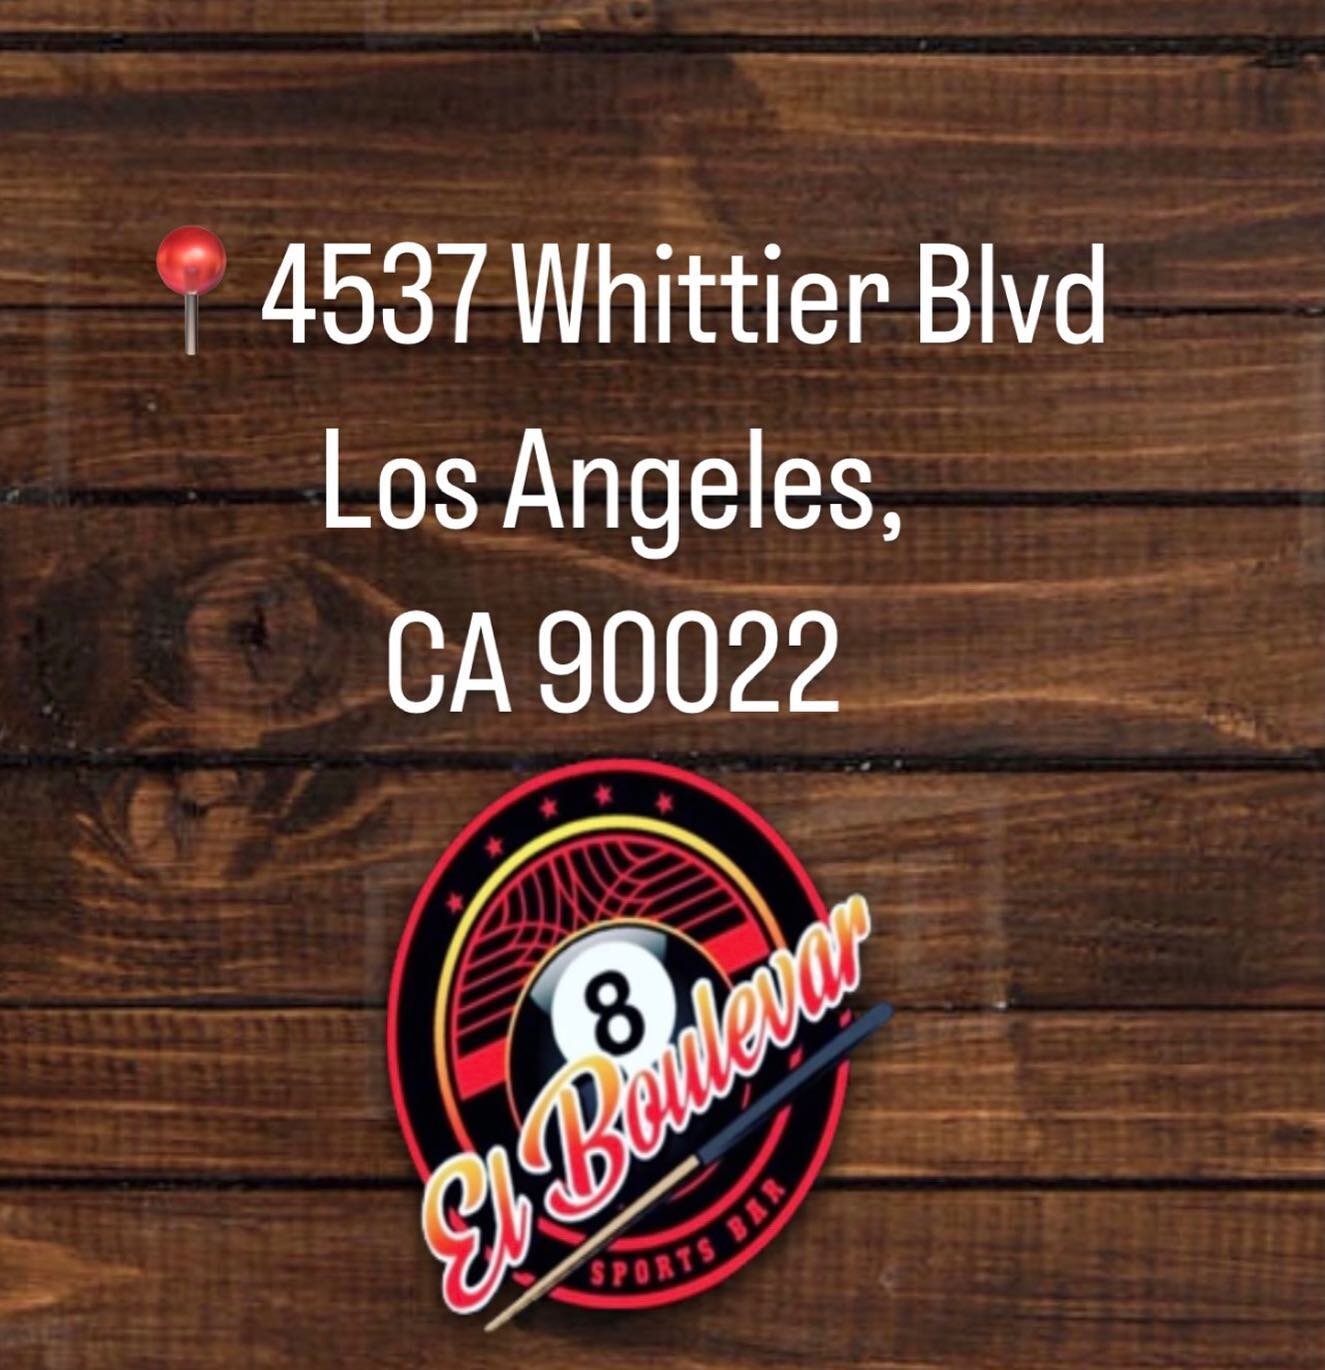 📍4537 Whittier Blvd Los Angeles, CA 90022 @elboulevarsportsbar 
#sportsbar#eastlos#bar#beer#whittierblvd#eastlosangeles#cocktails#micheladas#shots#beerfun#explorepage